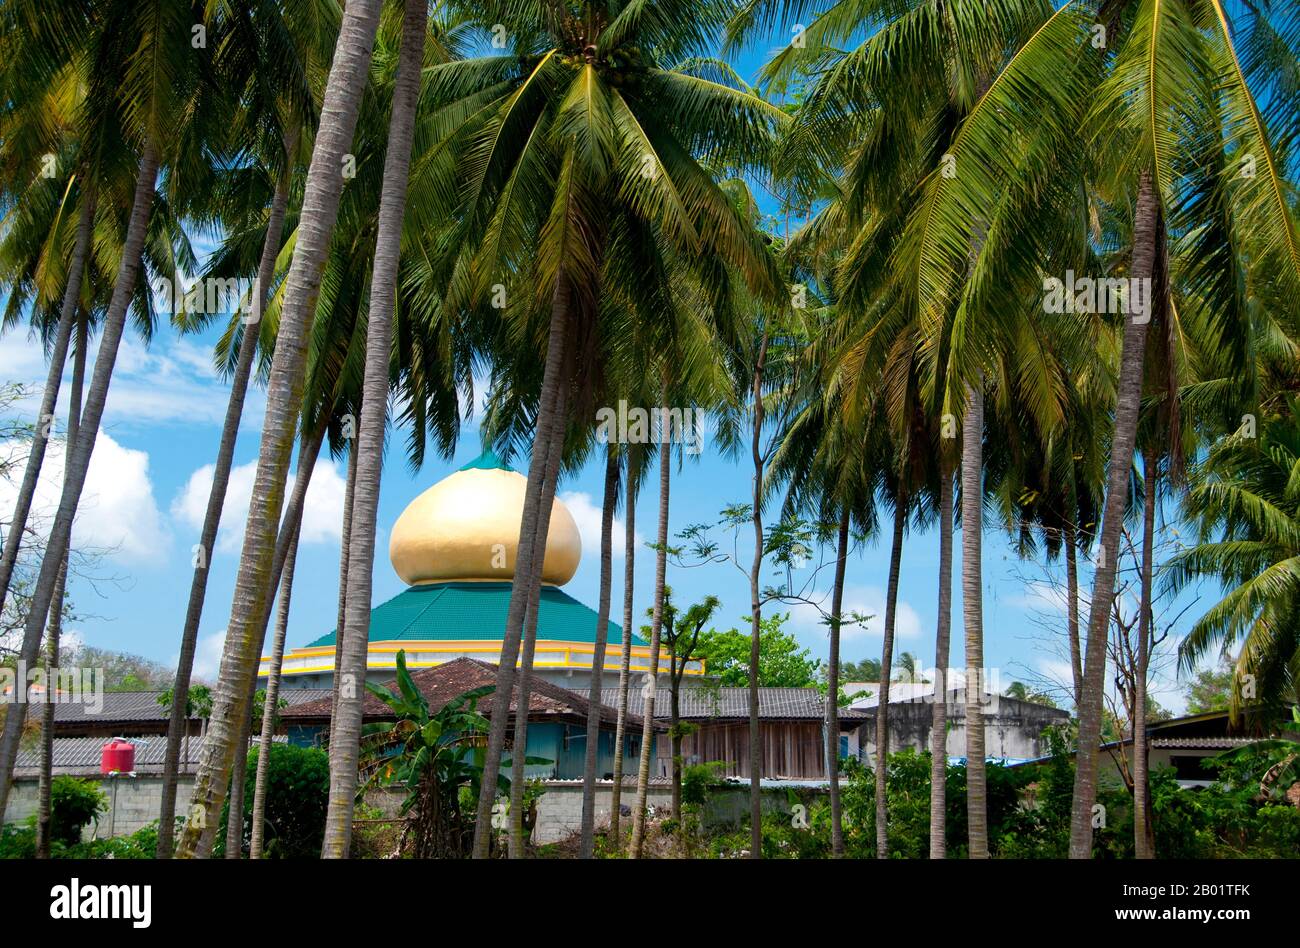 Das kleine Zentrum von Saiburi ist die Hauptstadt des Saiburi-Distrikts, der sich etwa 94 km (60 Meilen) südöstlich von Pattani im Süden Thailands befindet. Sie wird auch Selindung Bayu oder "Windschutz" von der lokalen malaiischen muslimischen Fischbevölkerung genannt und ist vielleicht der wichtigste Fischerhafen außerhalb Pattanis selbst in der Provinz Pattani. Stockfoto